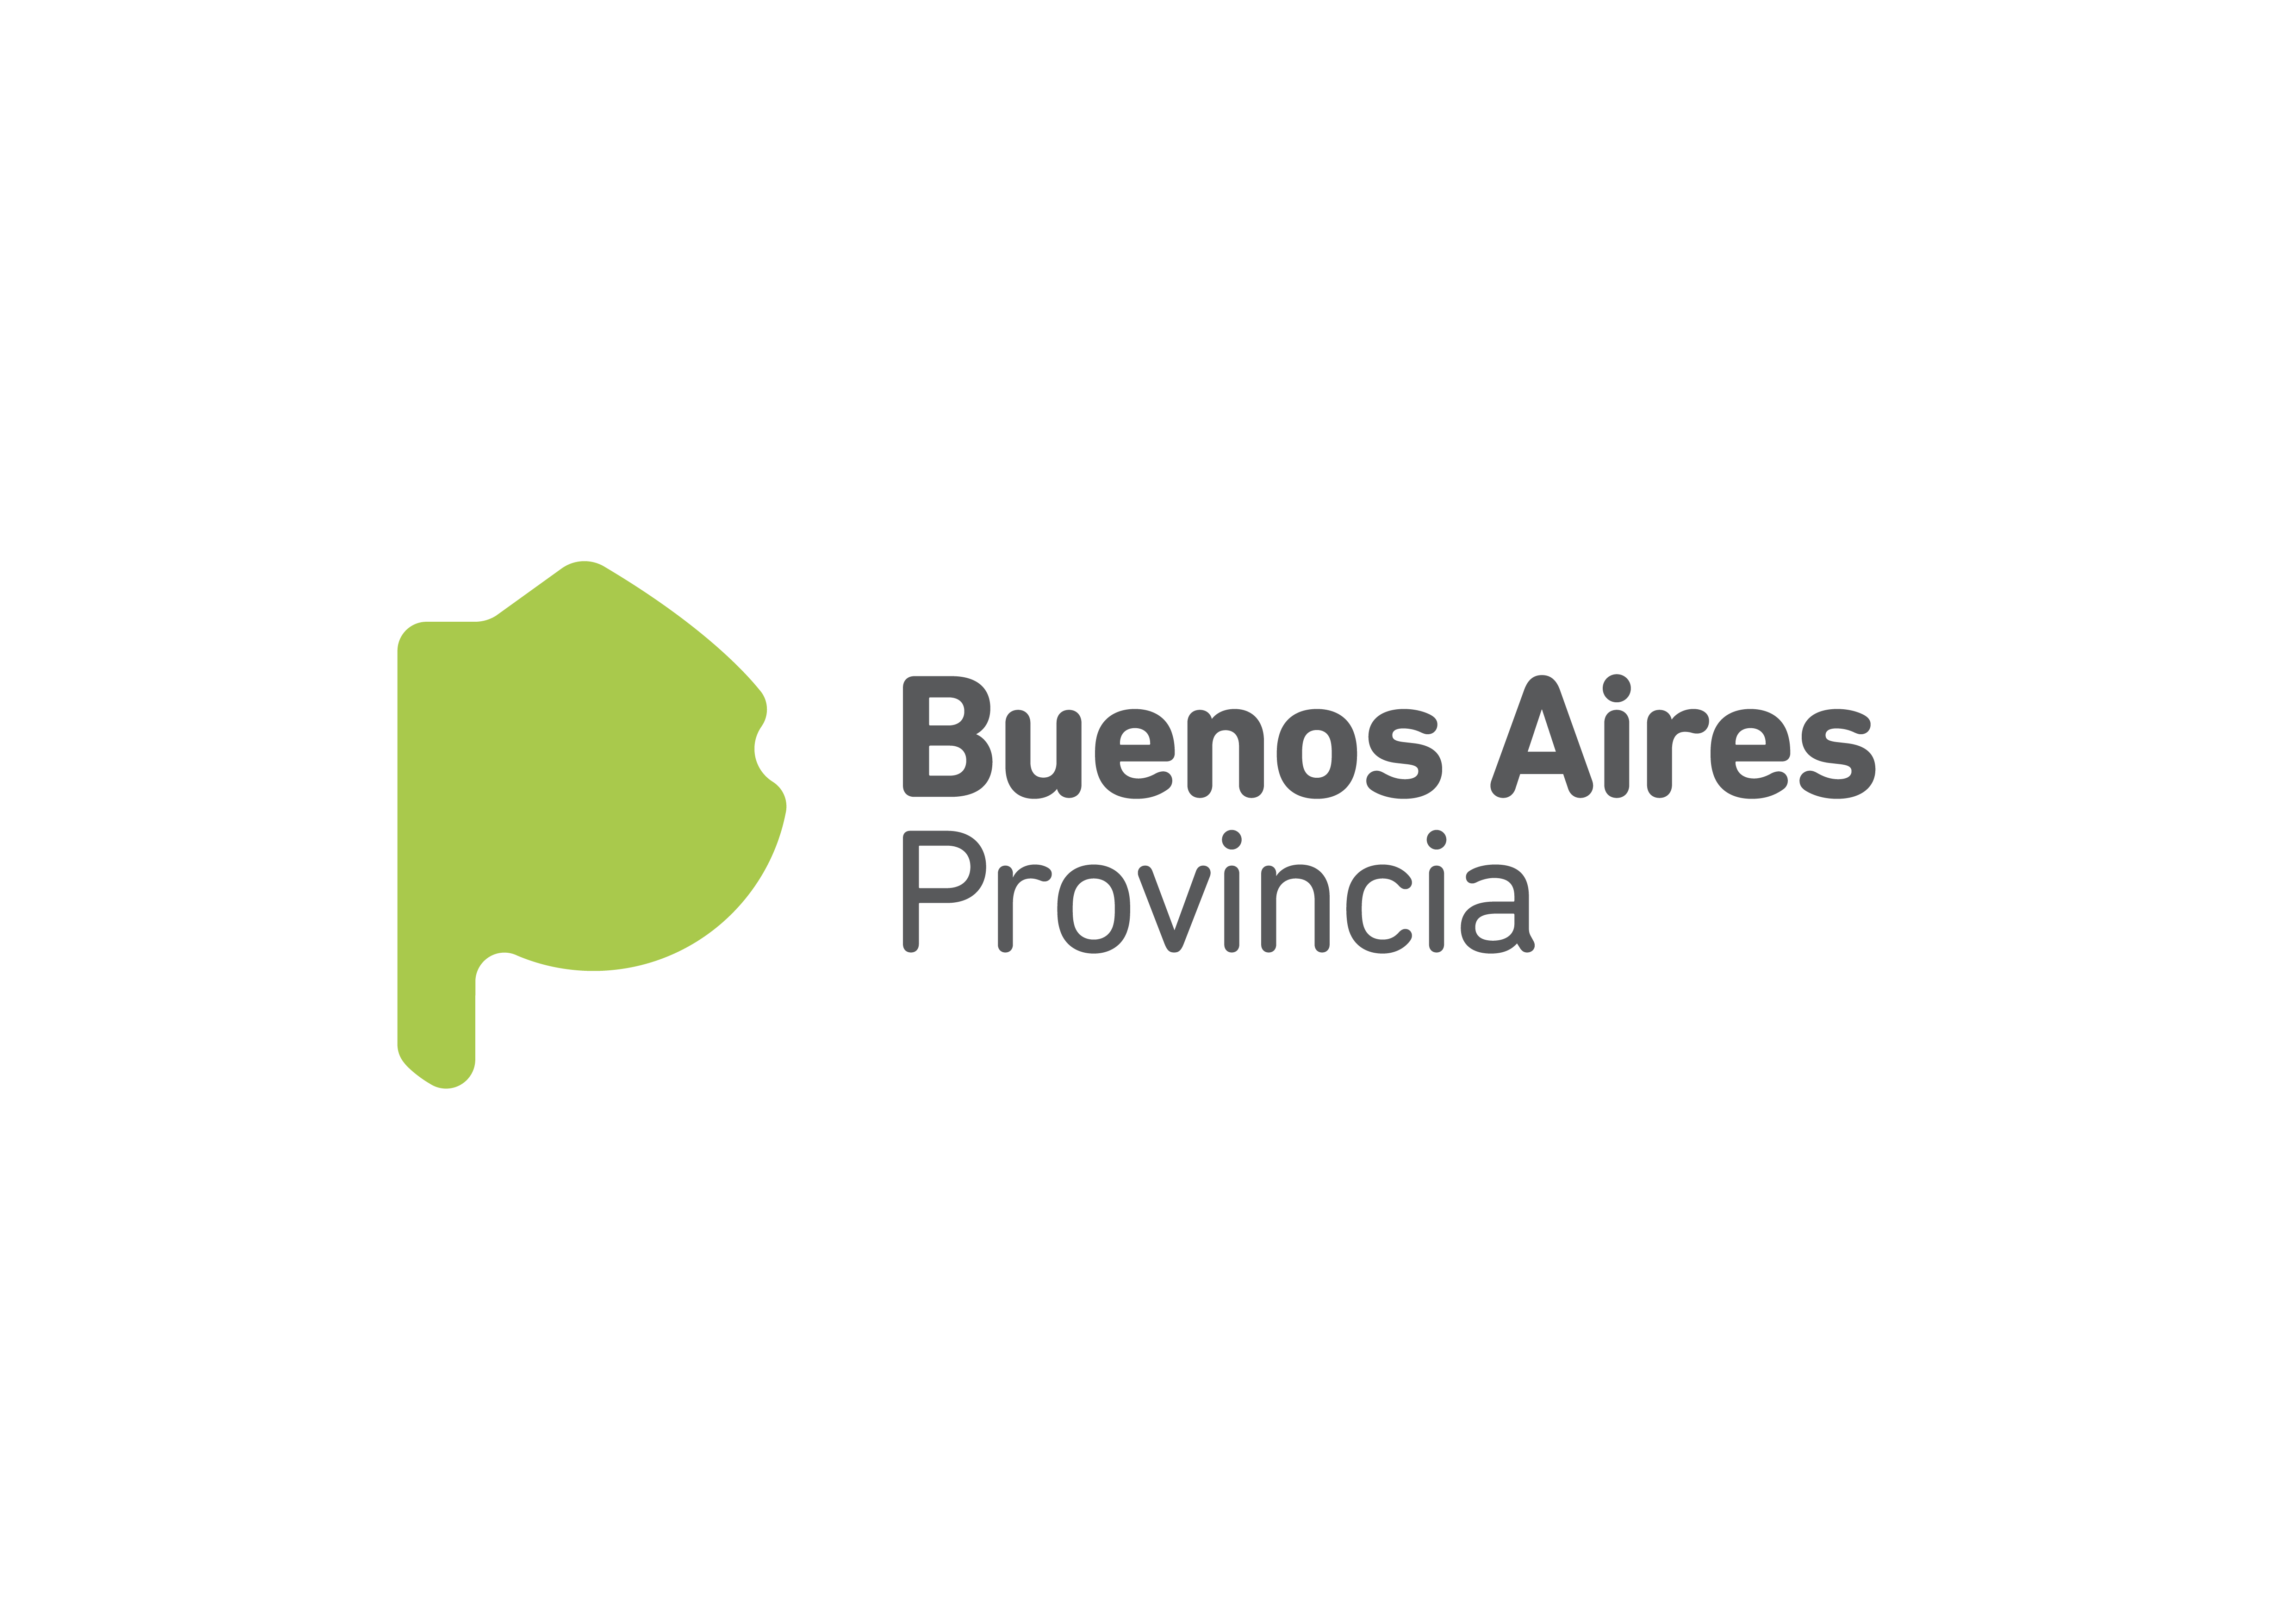 Subsecretaría de Deportes de la Provincia de Buenos Aires